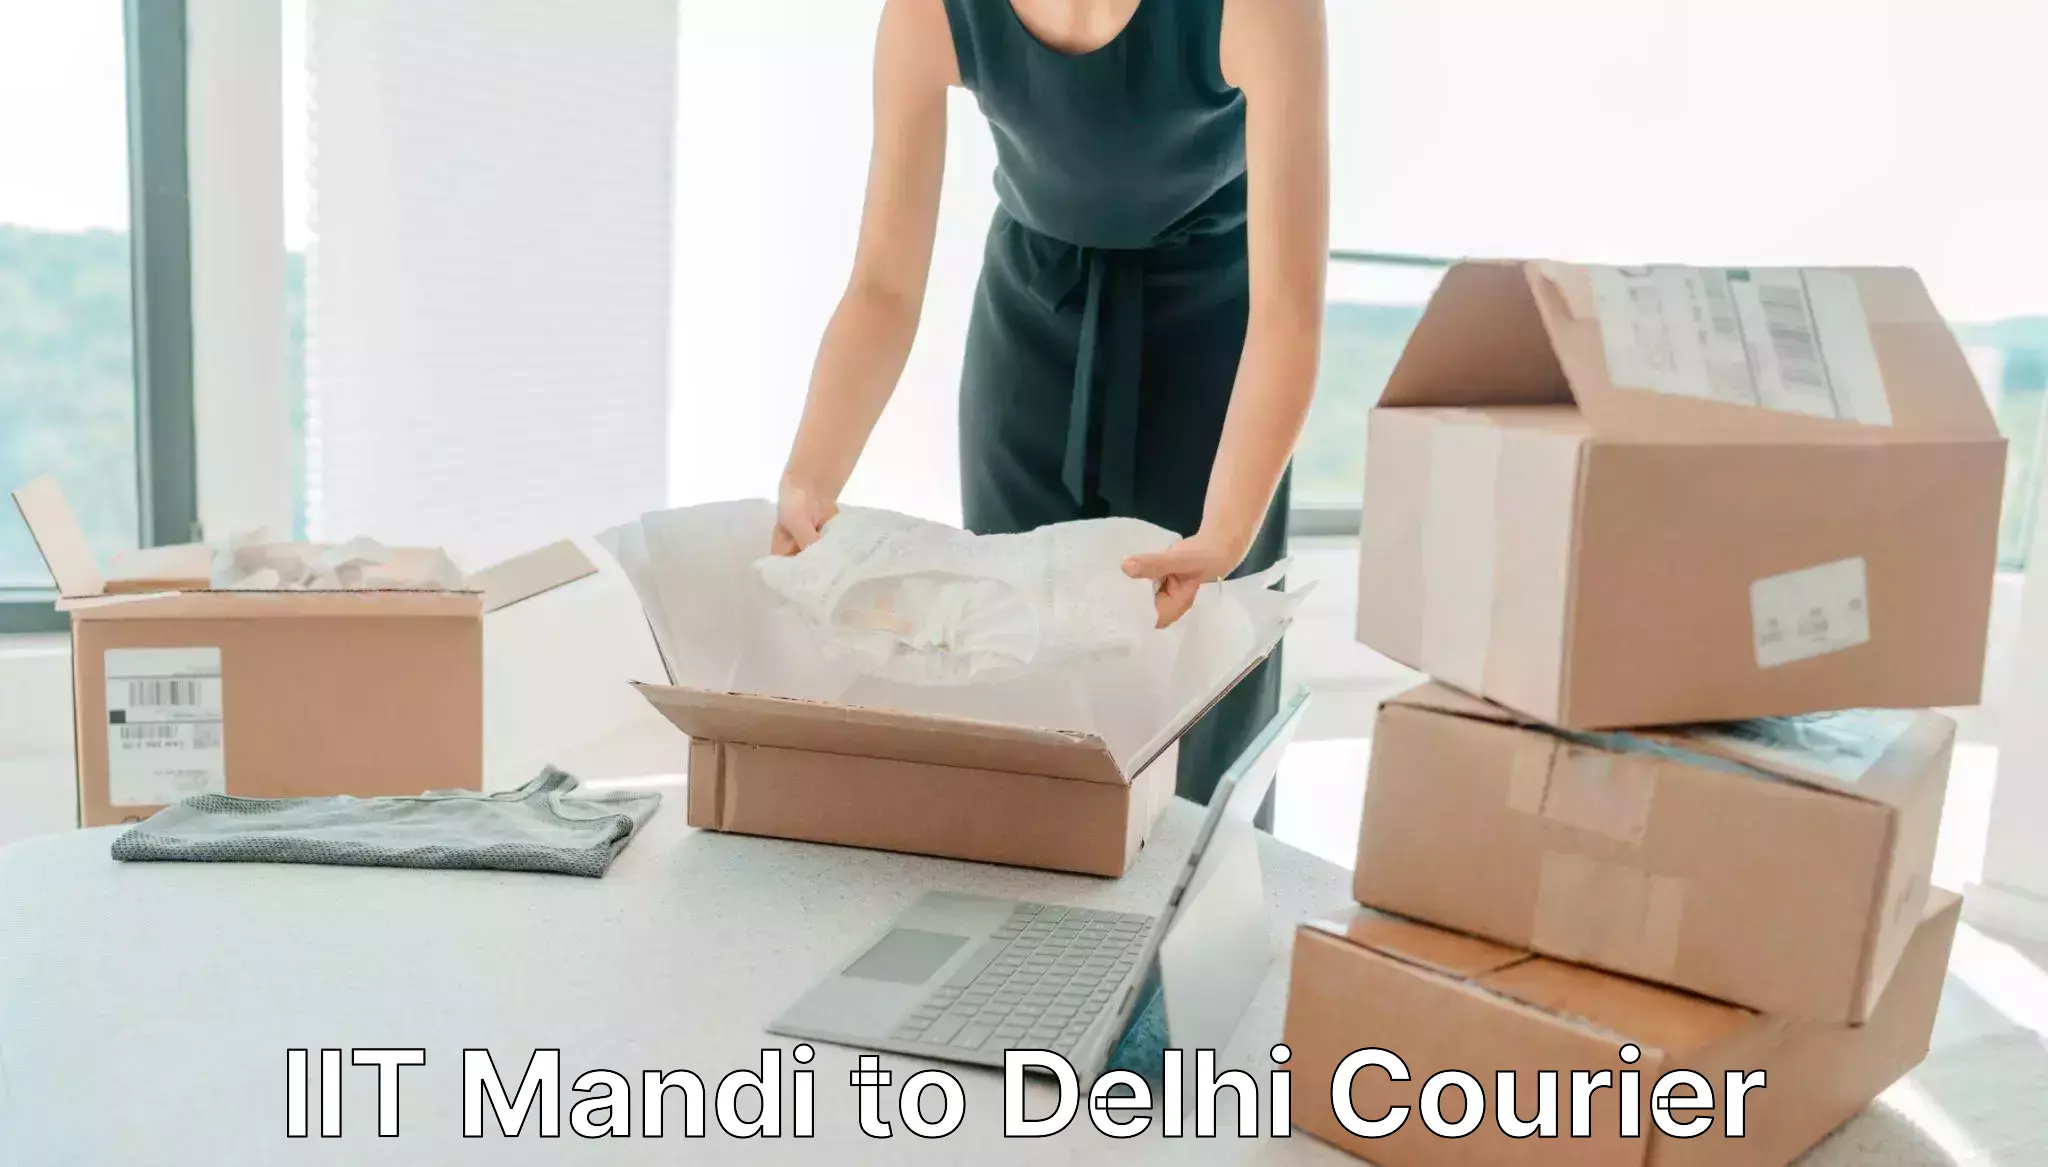 Cost-effective courier options IIT Mandi to Ashok Vihar